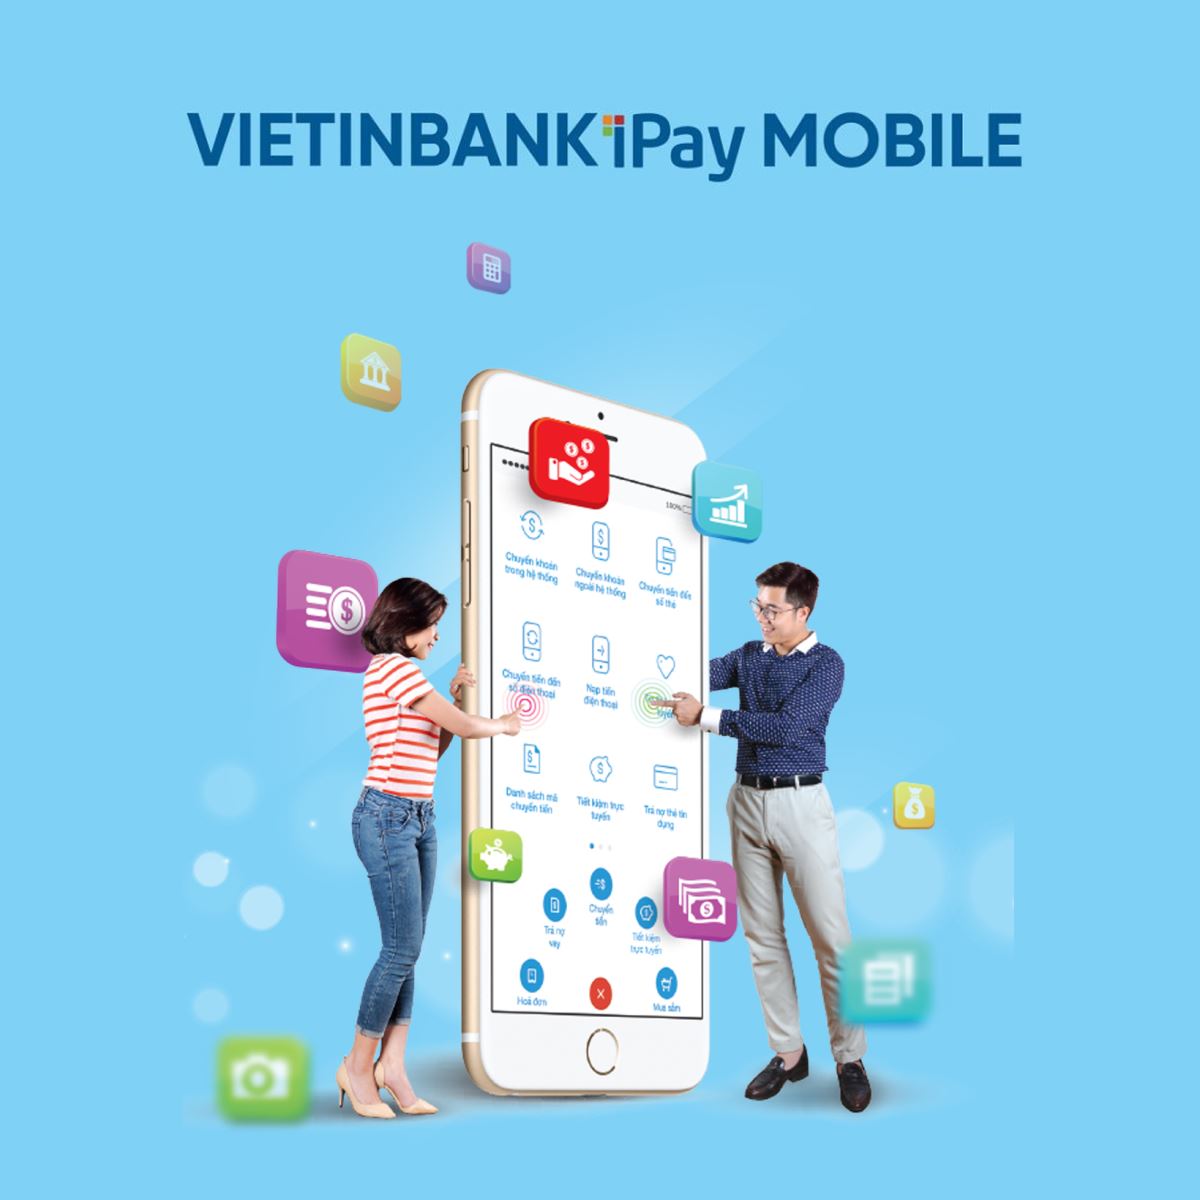 Vietinbank Ipay: Hướng Dẫn Cài Đặt và Sử Dụng Mới Nhất